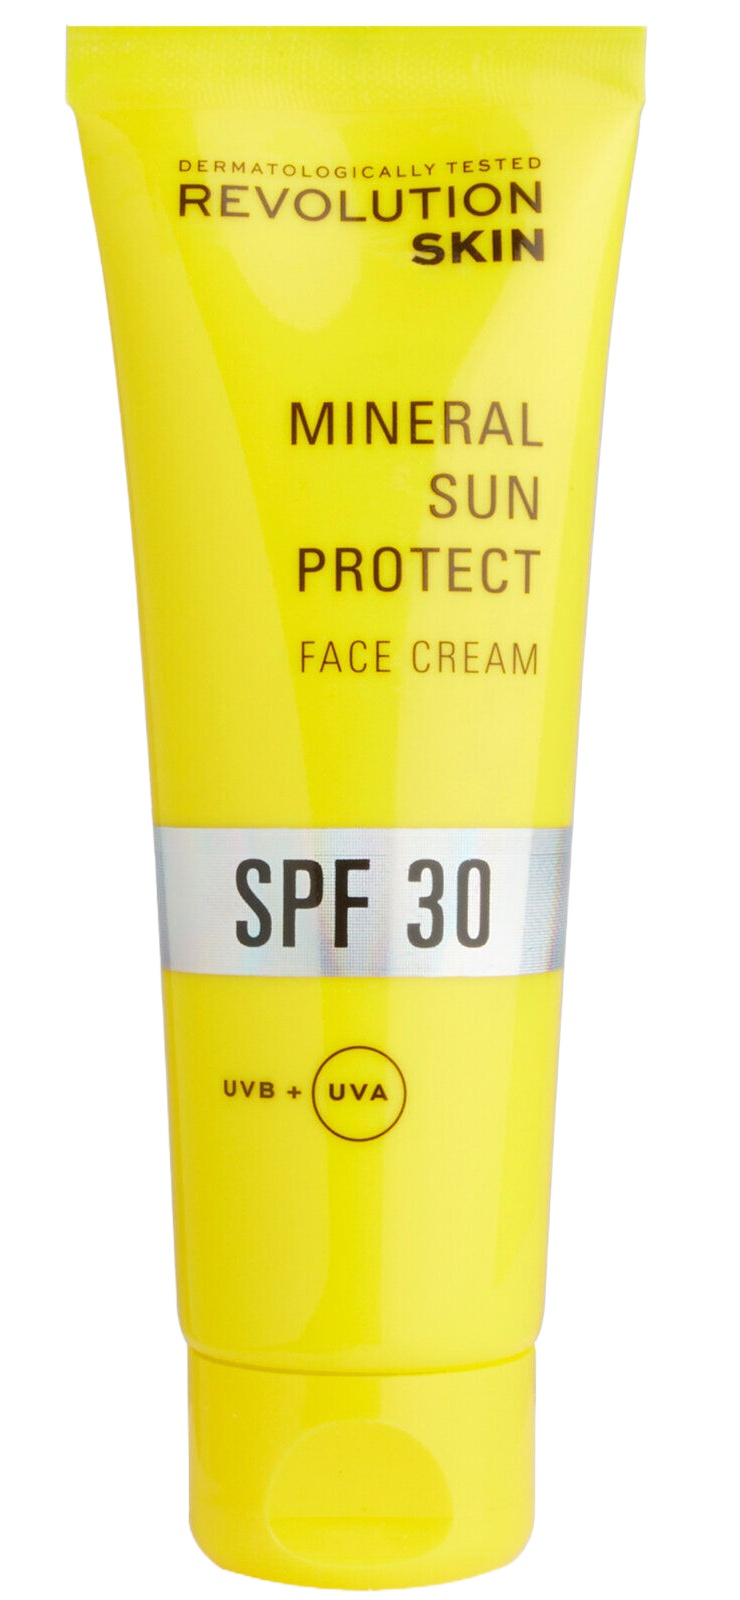 Revolution Skin Mineral Sun Protect Face Cream SPF 30